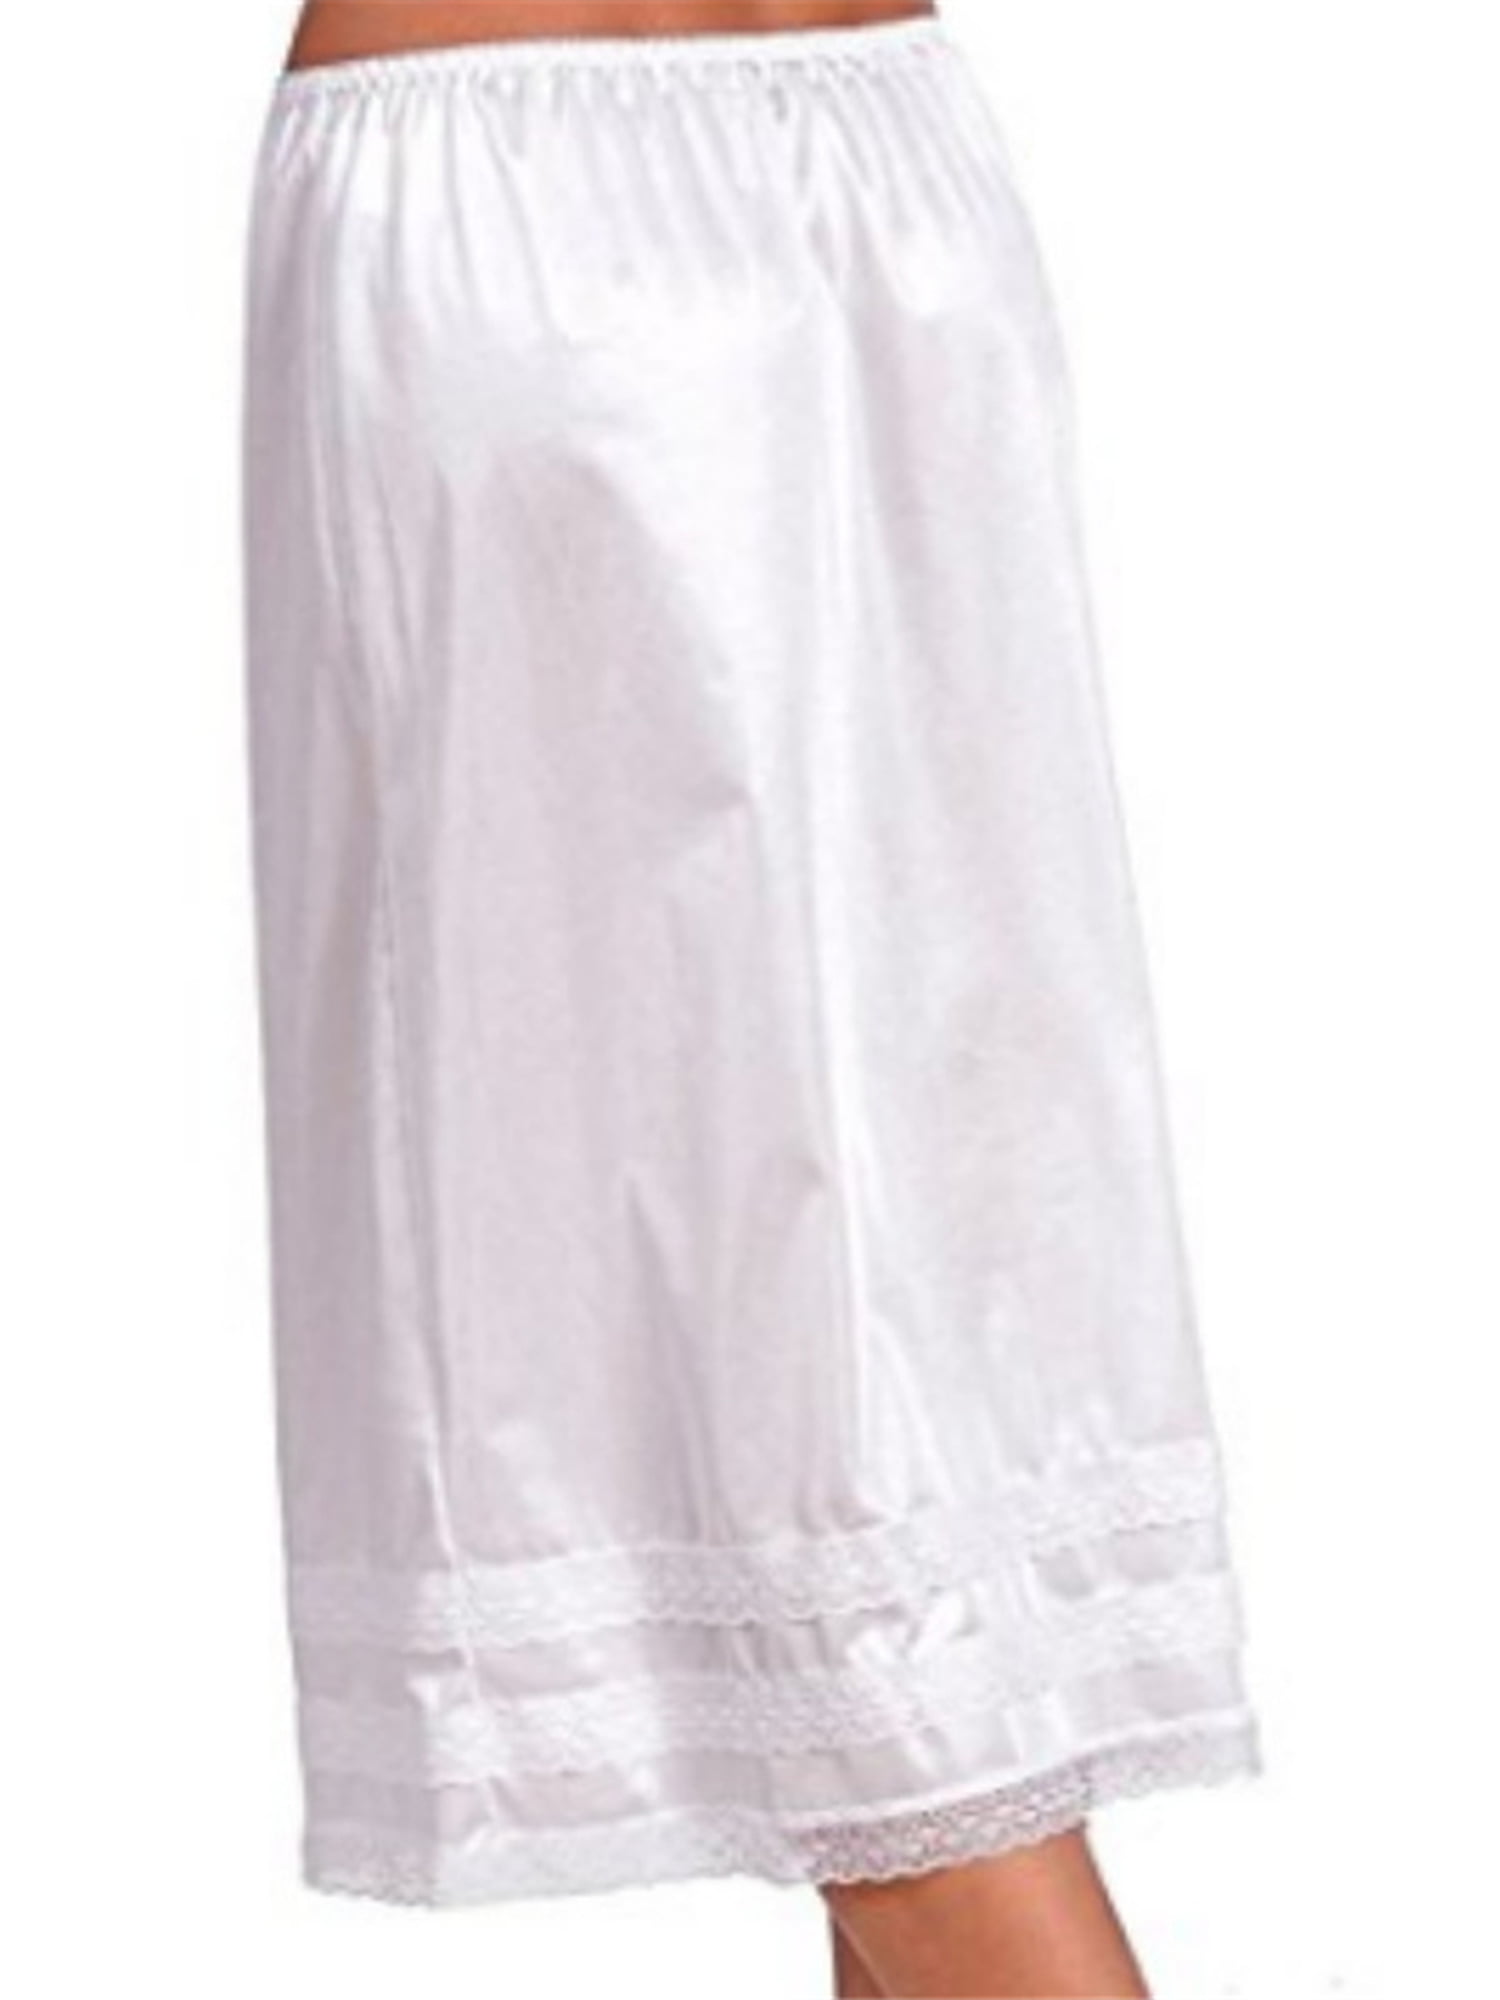 Huakaishijie Women Retro Long Solid Lace Hem Slip Half Slip Skirt Under ...